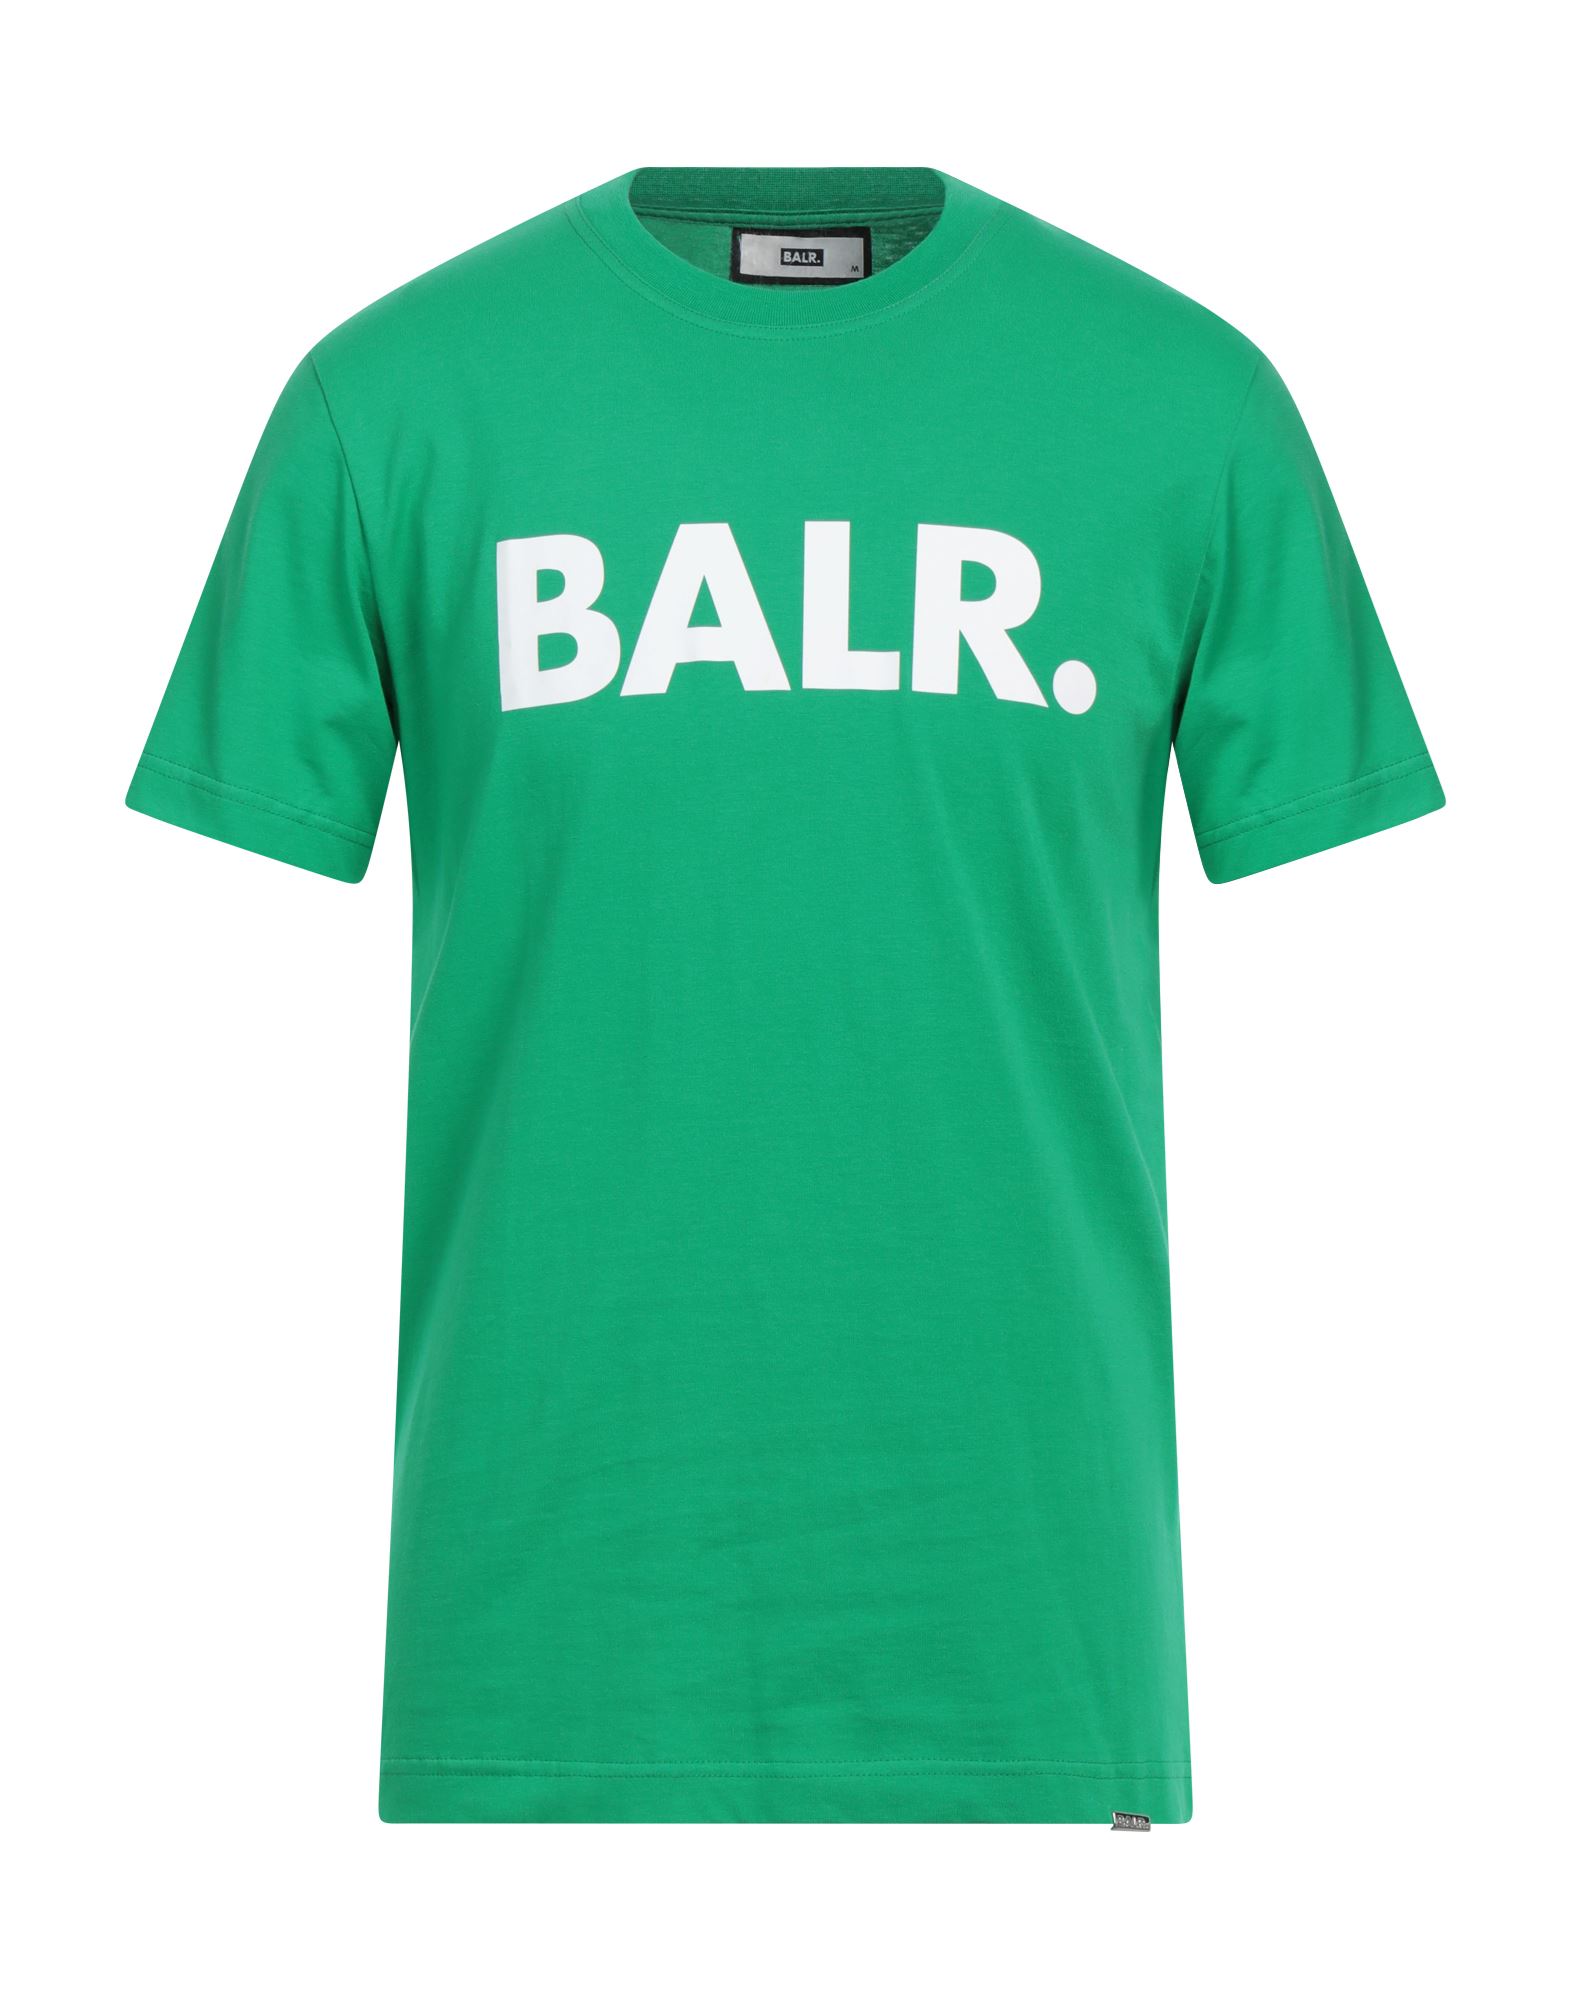 BALR. T-shirts Herren Grün von BALR.